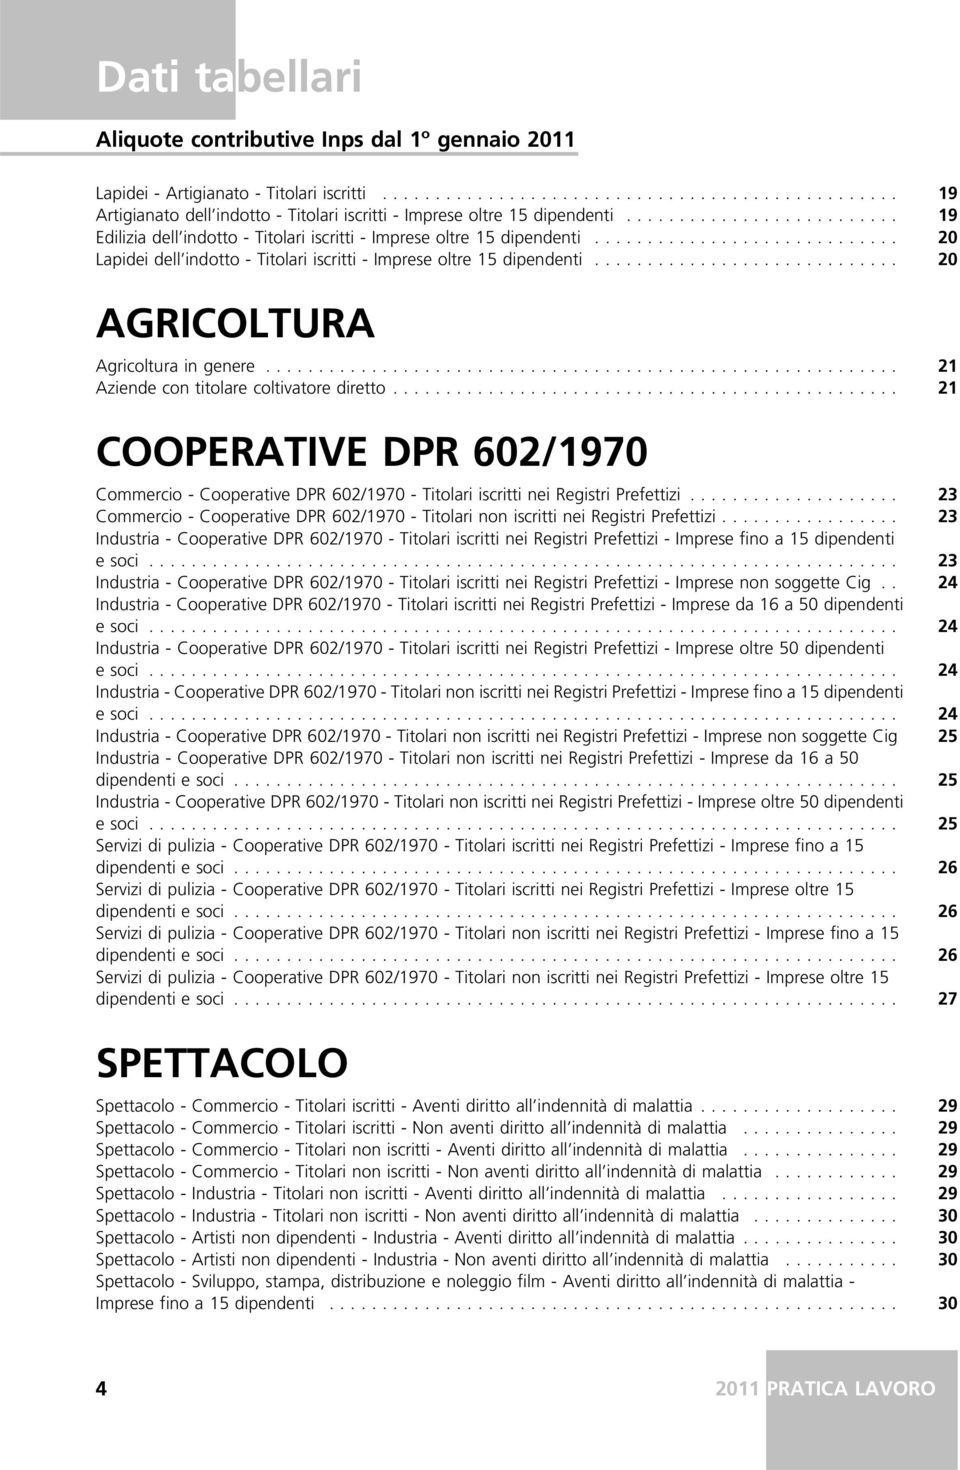 .... 21 Aziende con titolare coltivatore diretto.... 21 COOPERATIVE DPR 602/1970 Commercio - Cooperative DPR 602/1970 - Titolari iscritti nei Registri Prefettizi.